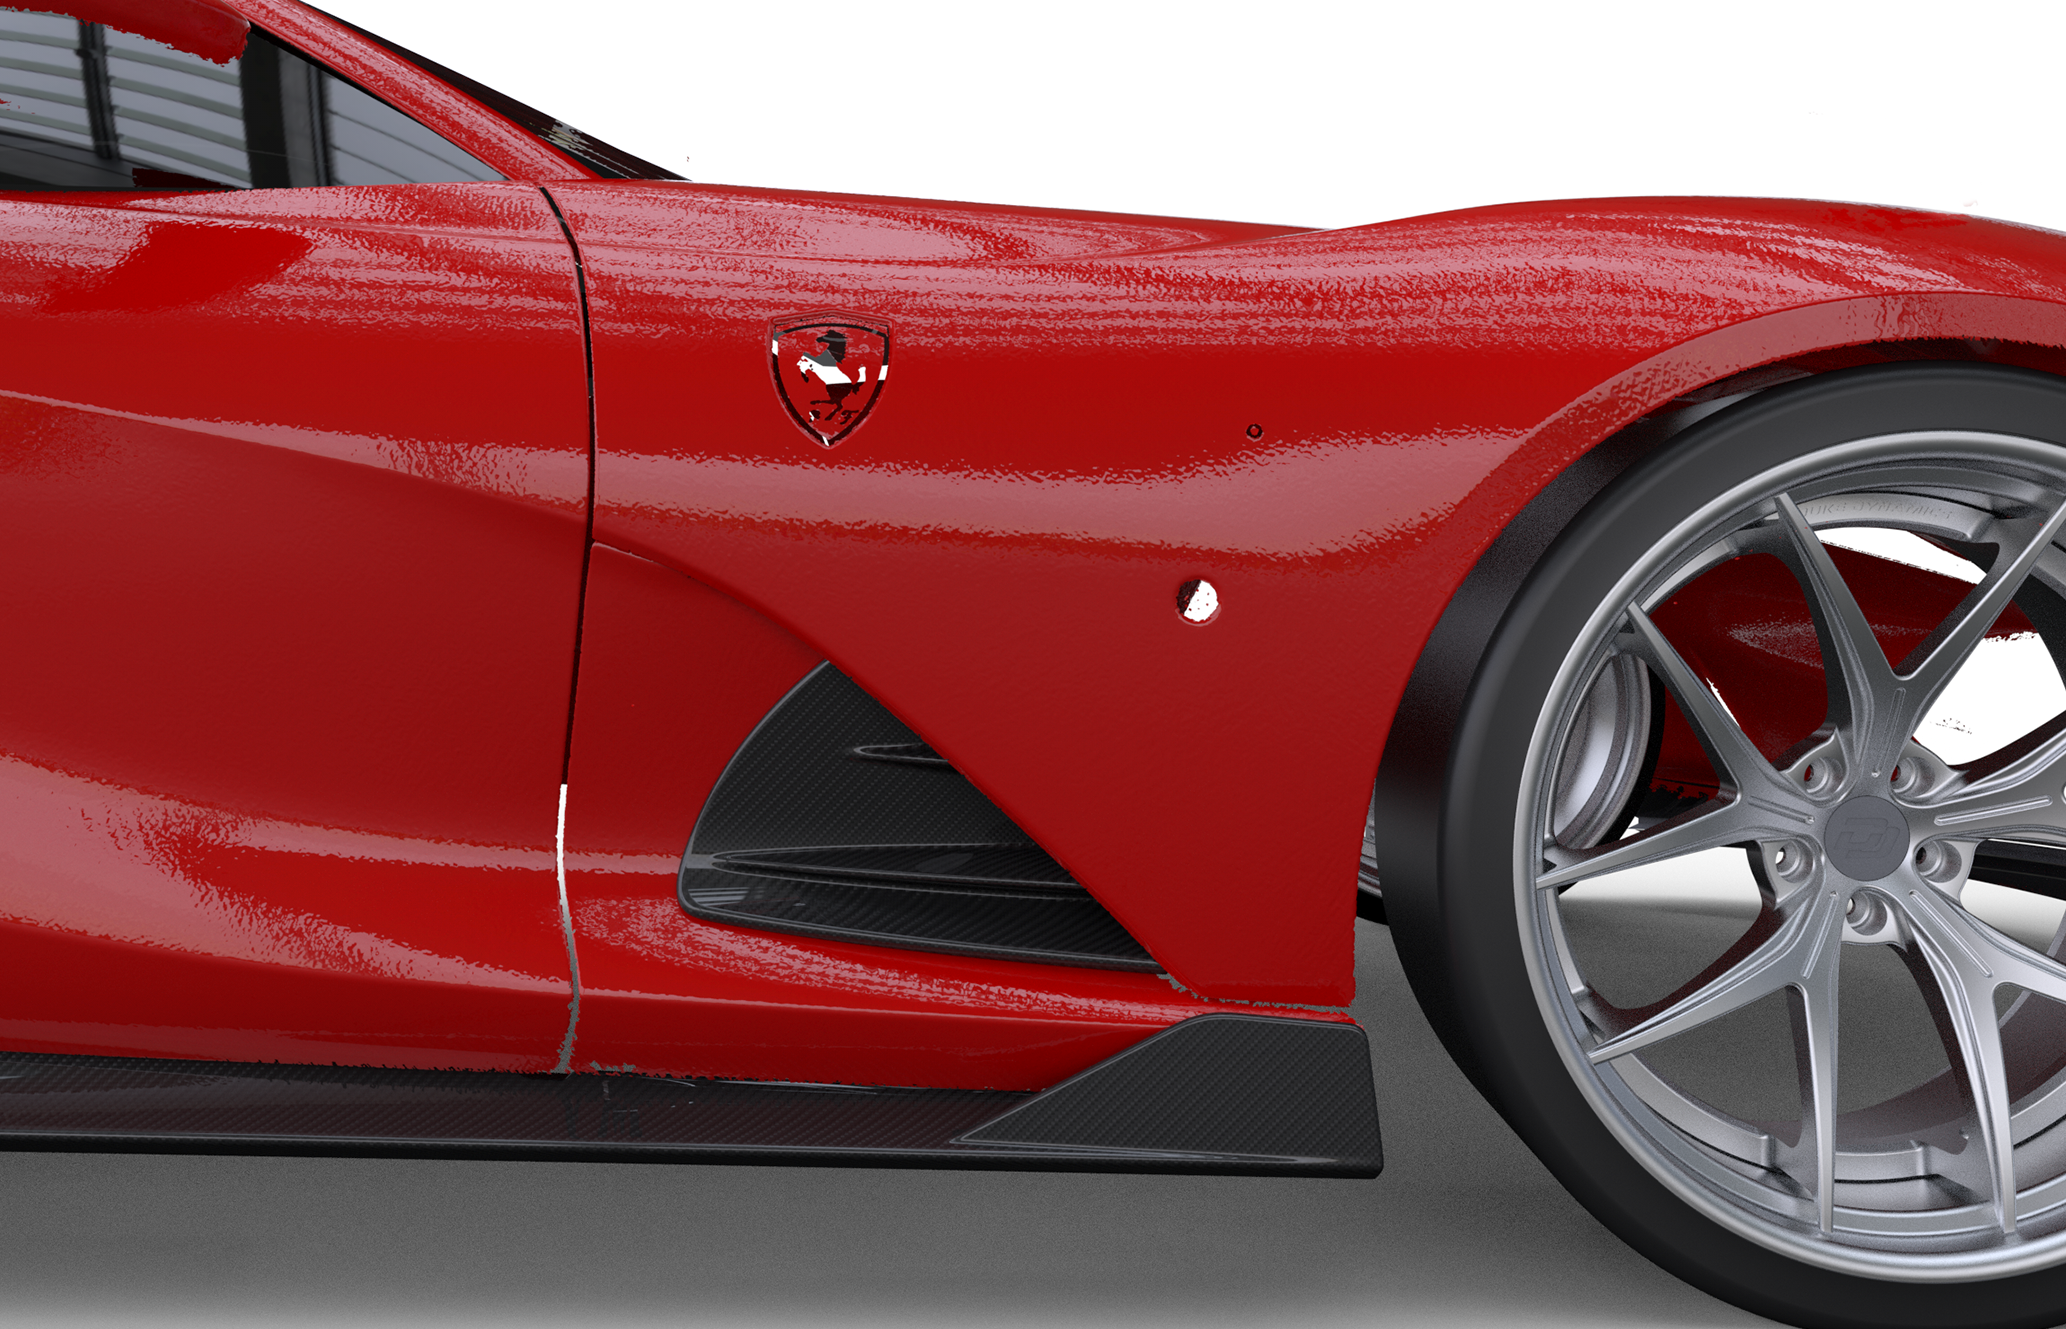 Check price and buy Duke Dynamics Body kit set for Ferrari 812